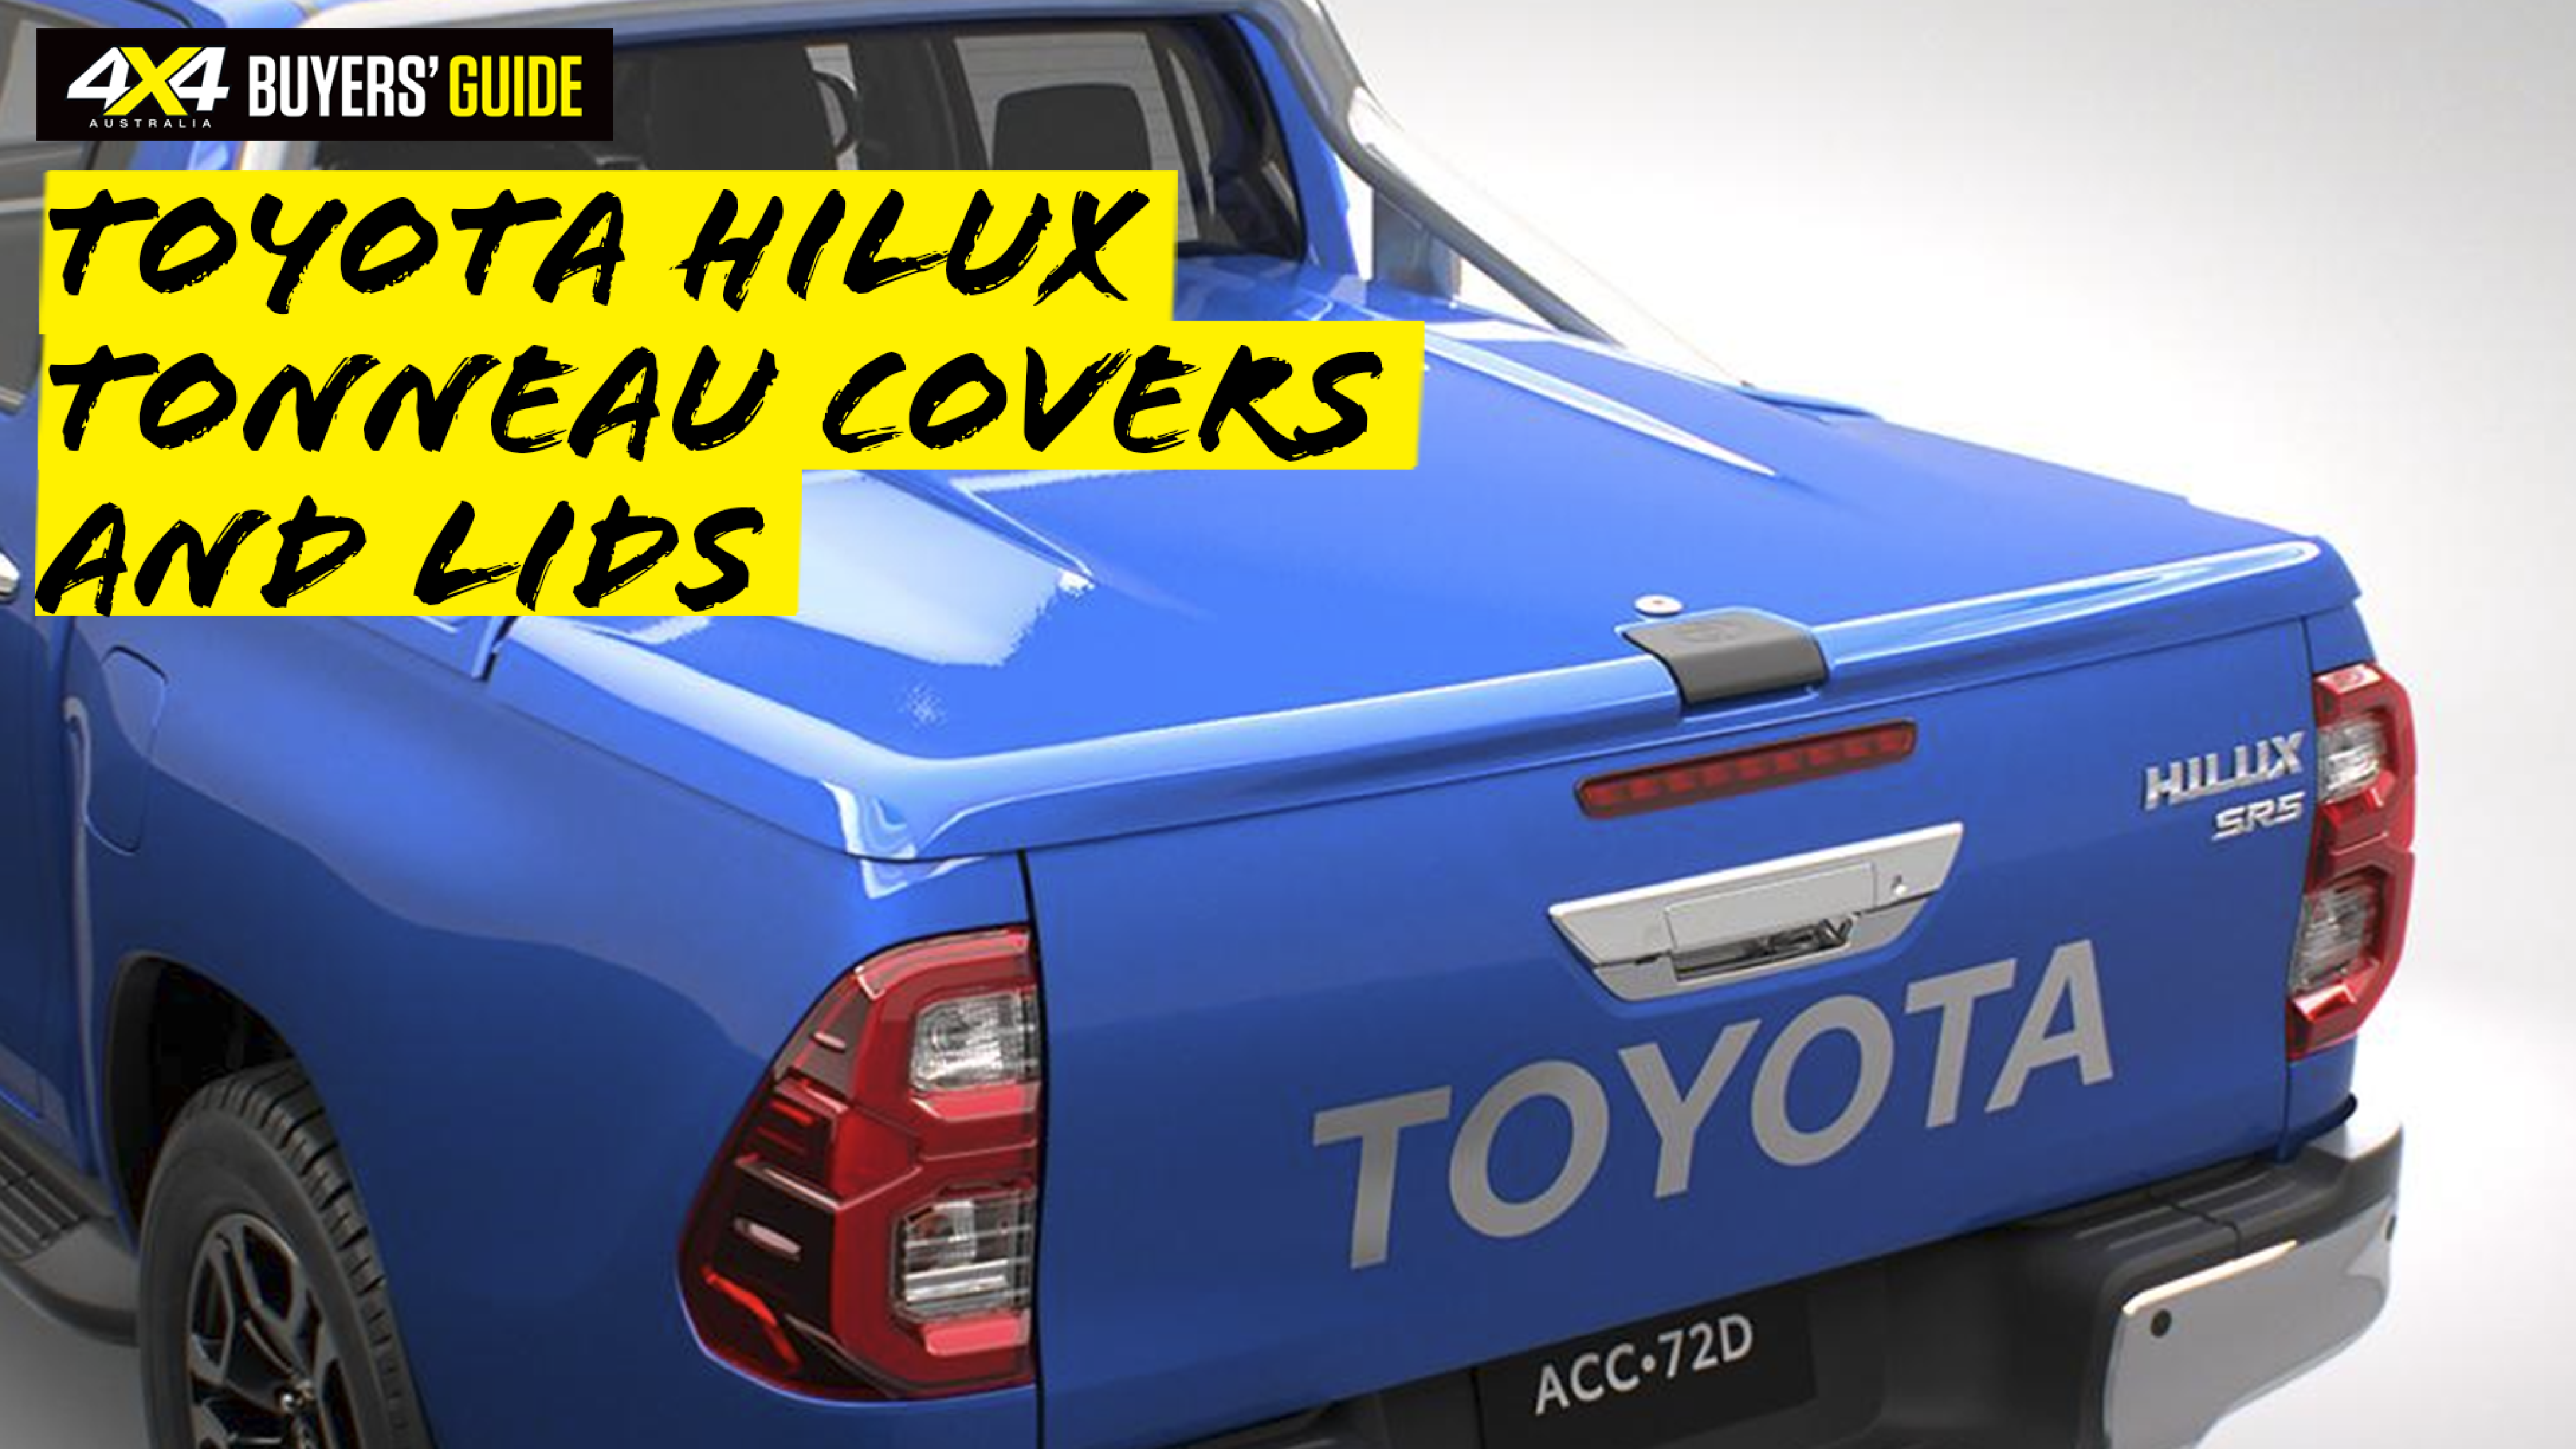 ec6b1184/hilux bg covers and lids png